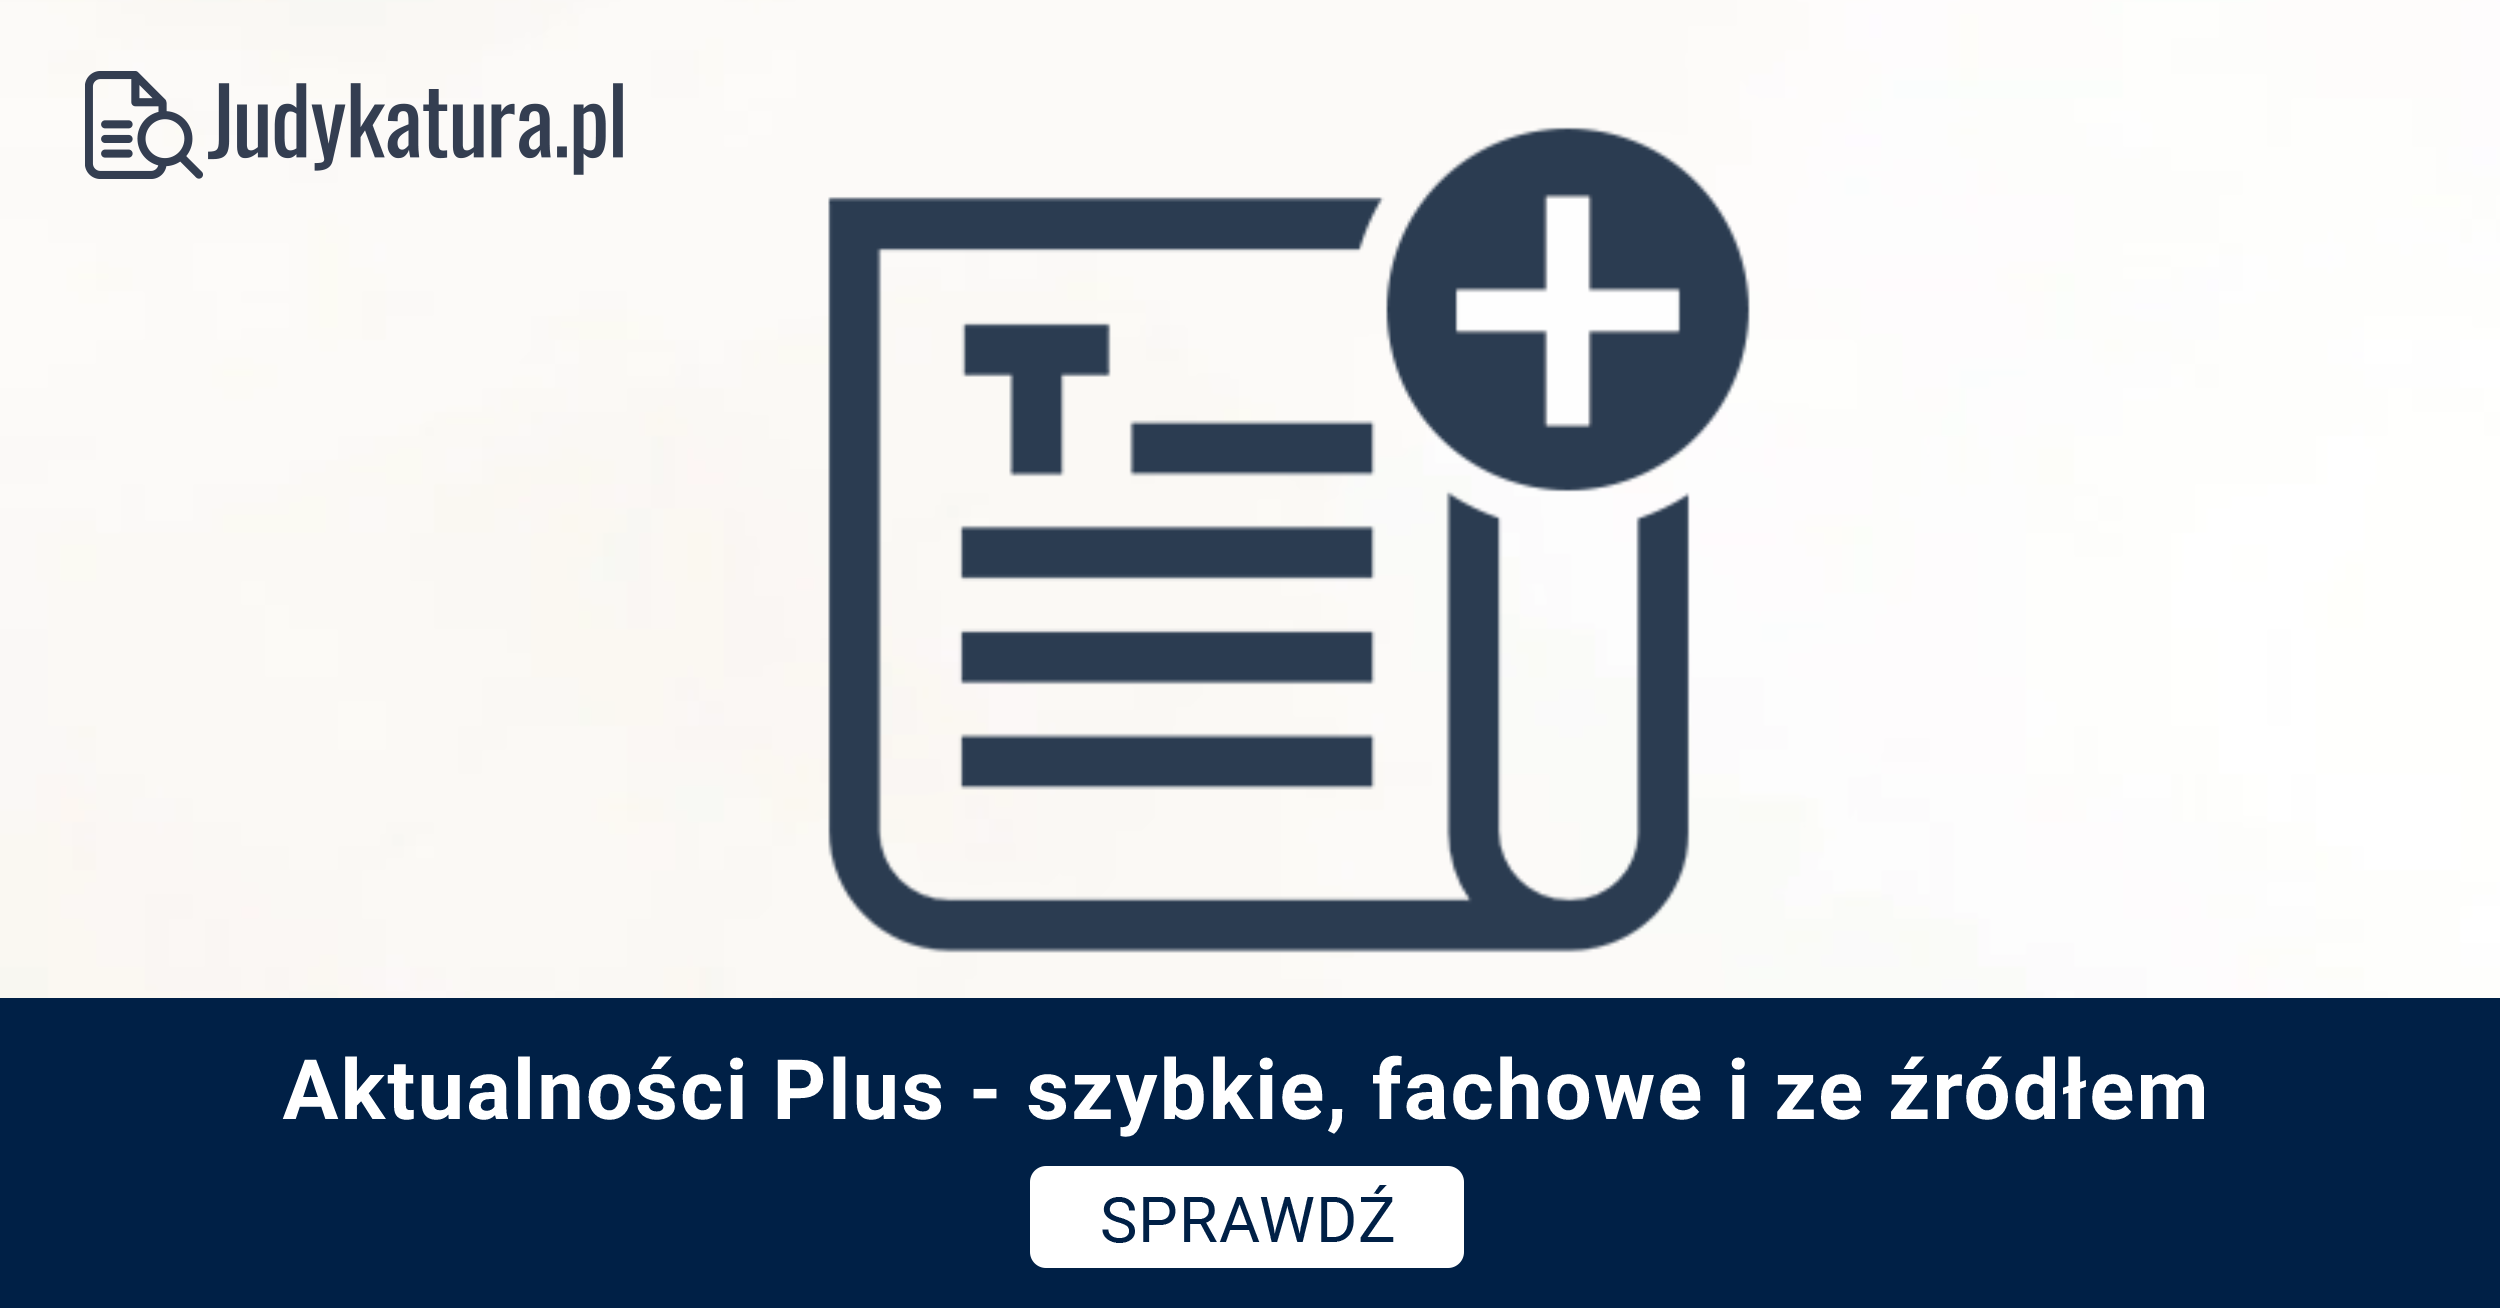 Aktualności PLUS – nowa usługa Judykatura.pl